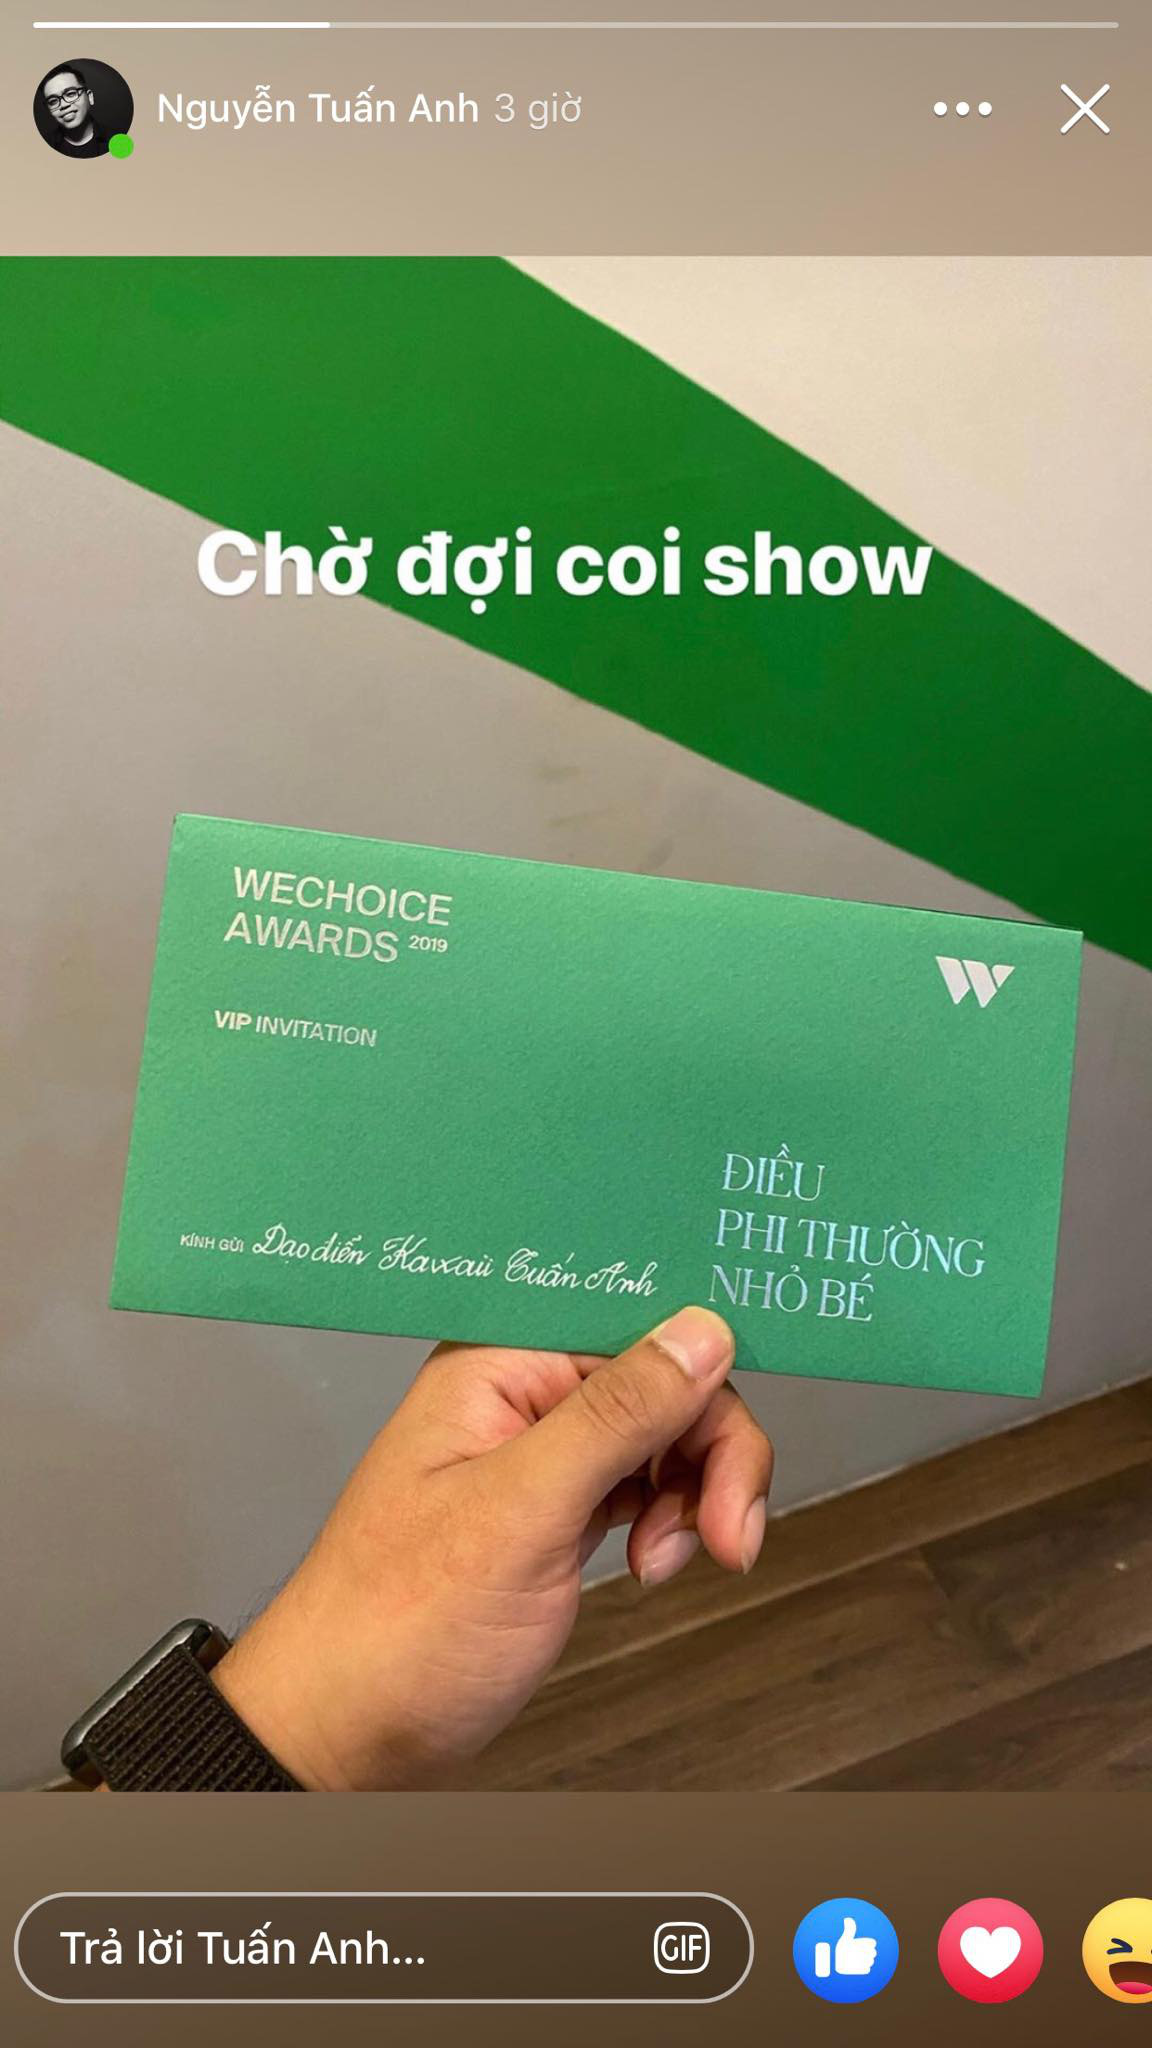 Cả dàn sao Vbiz đông đảo hào hứng khoe chiếc vé độc WeChoice Awards 2019: Điều phi thường ẩn trong xấp giấy nhỏ! - Ảnh 6.